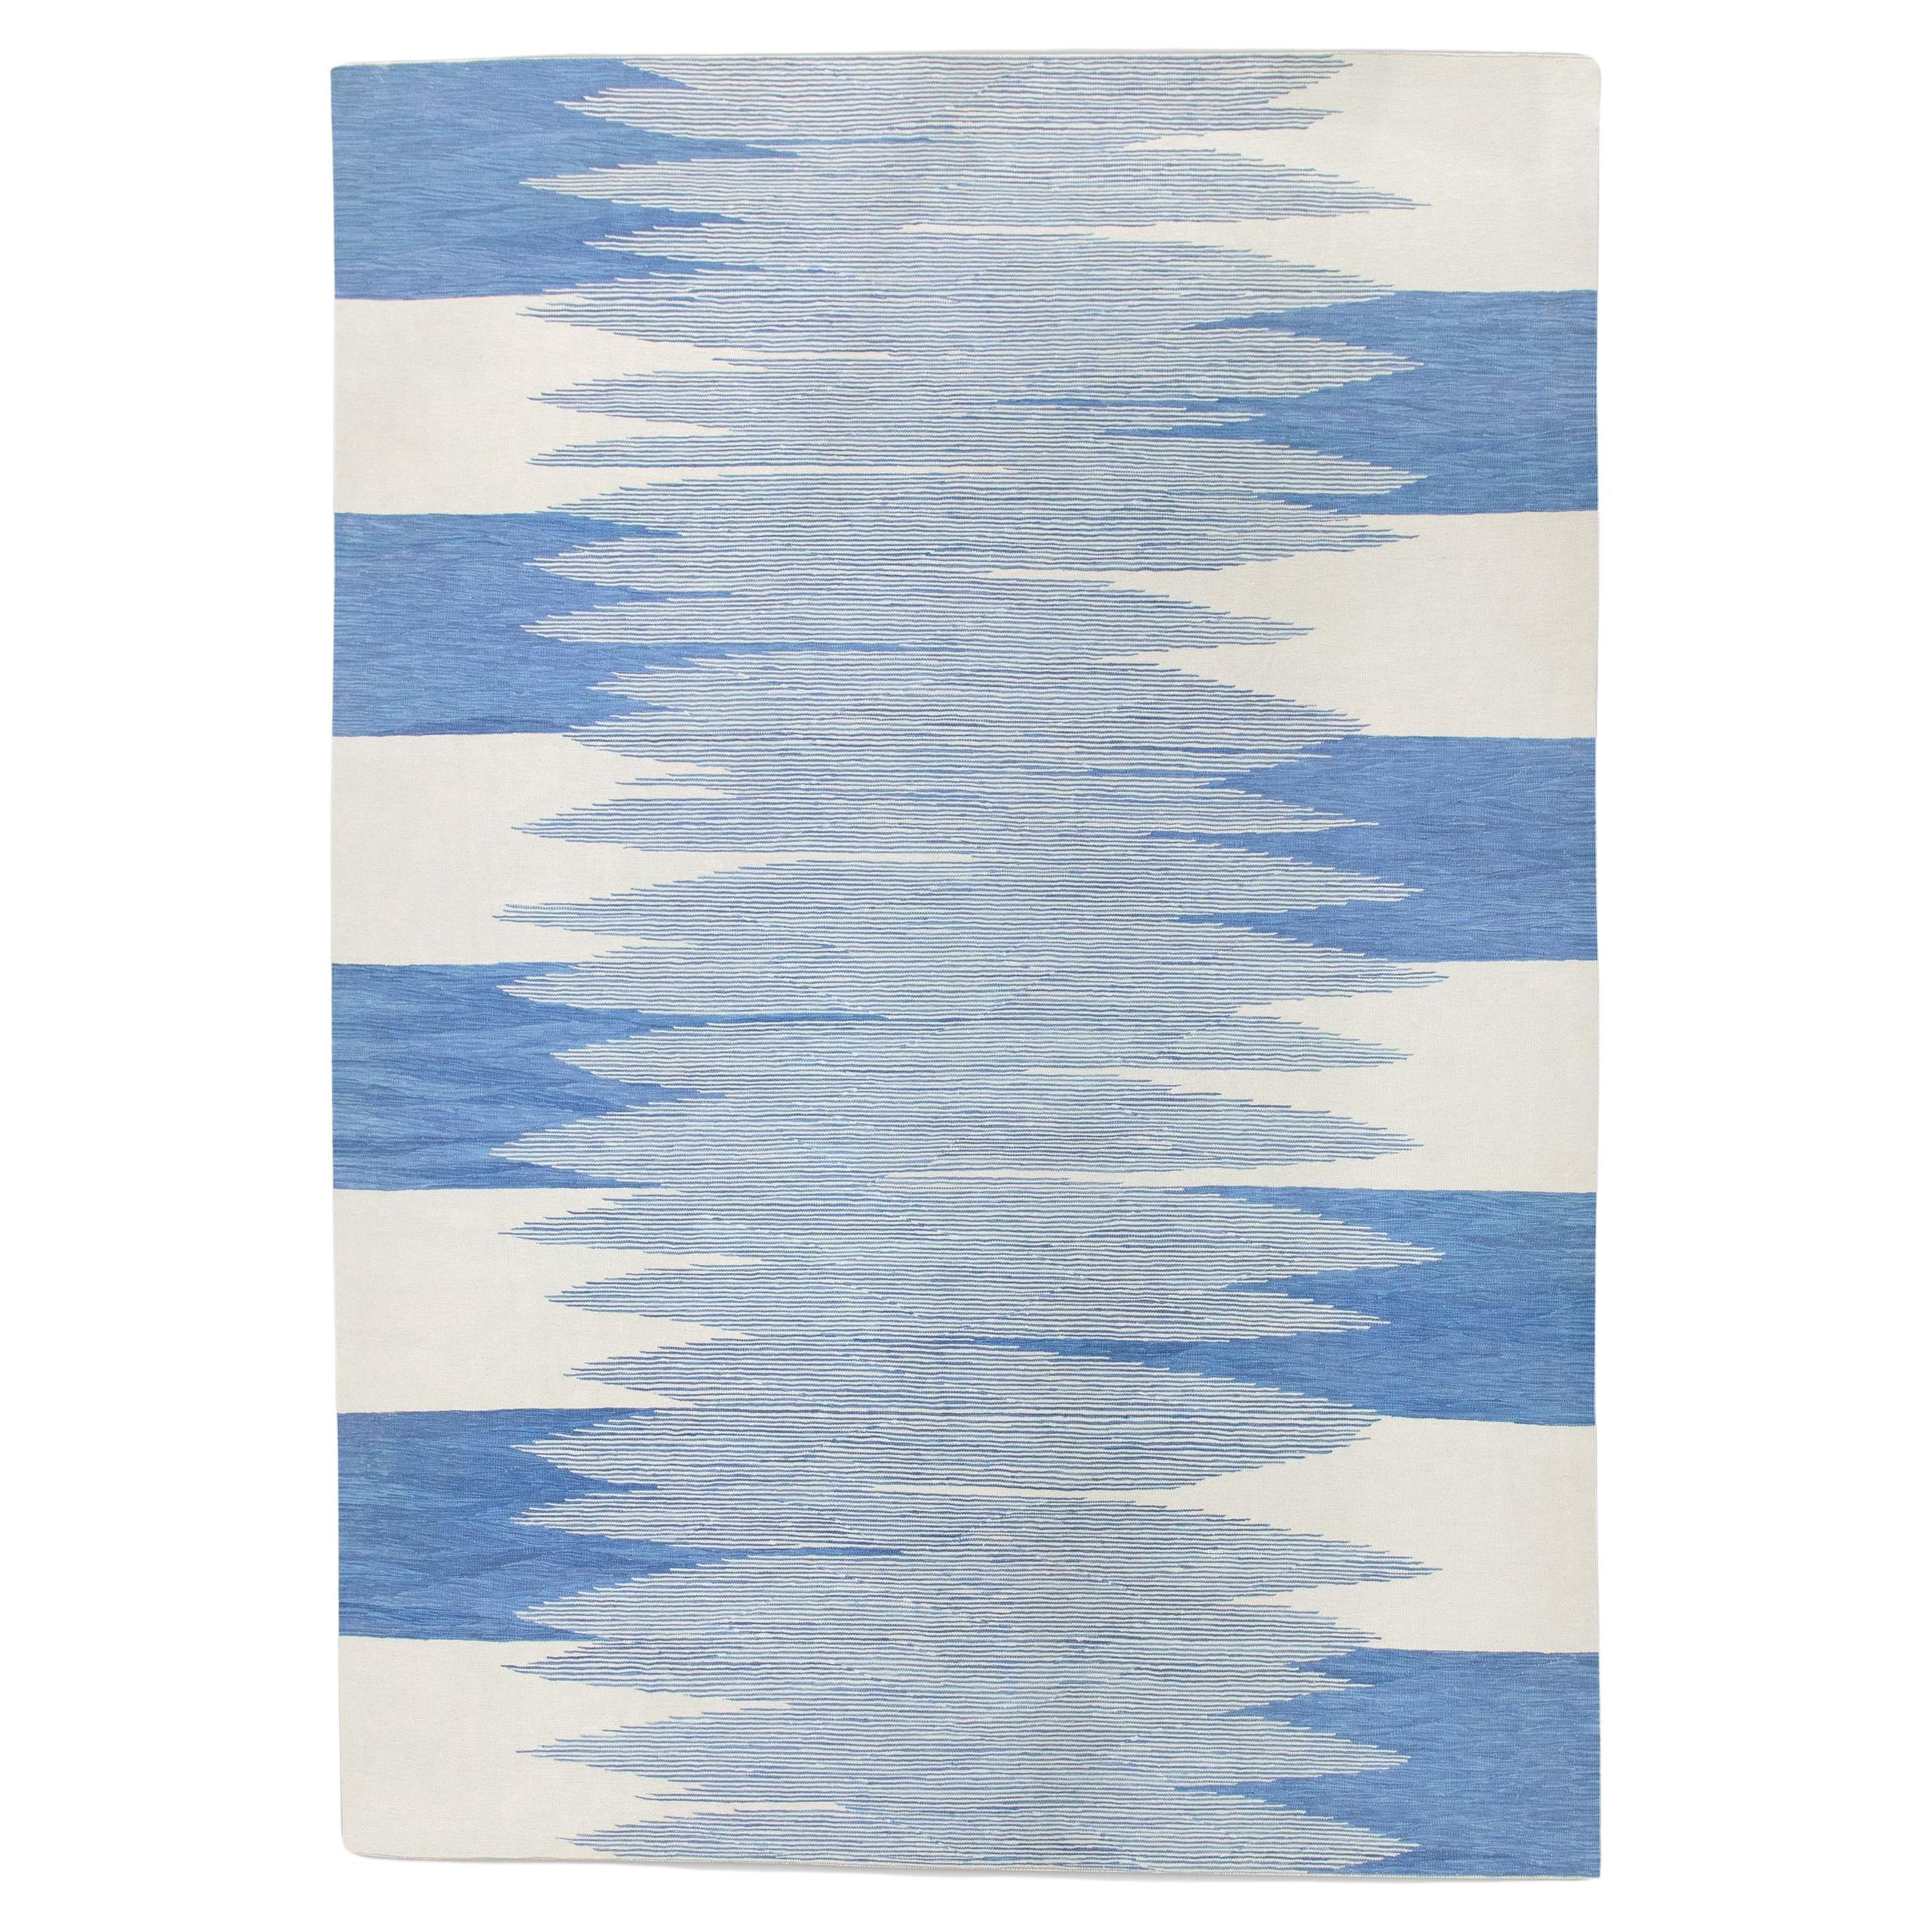 Blauer handgefertigter Flachgewebe-Wollteppich in geometrischem Design 9'2" X 12'2"